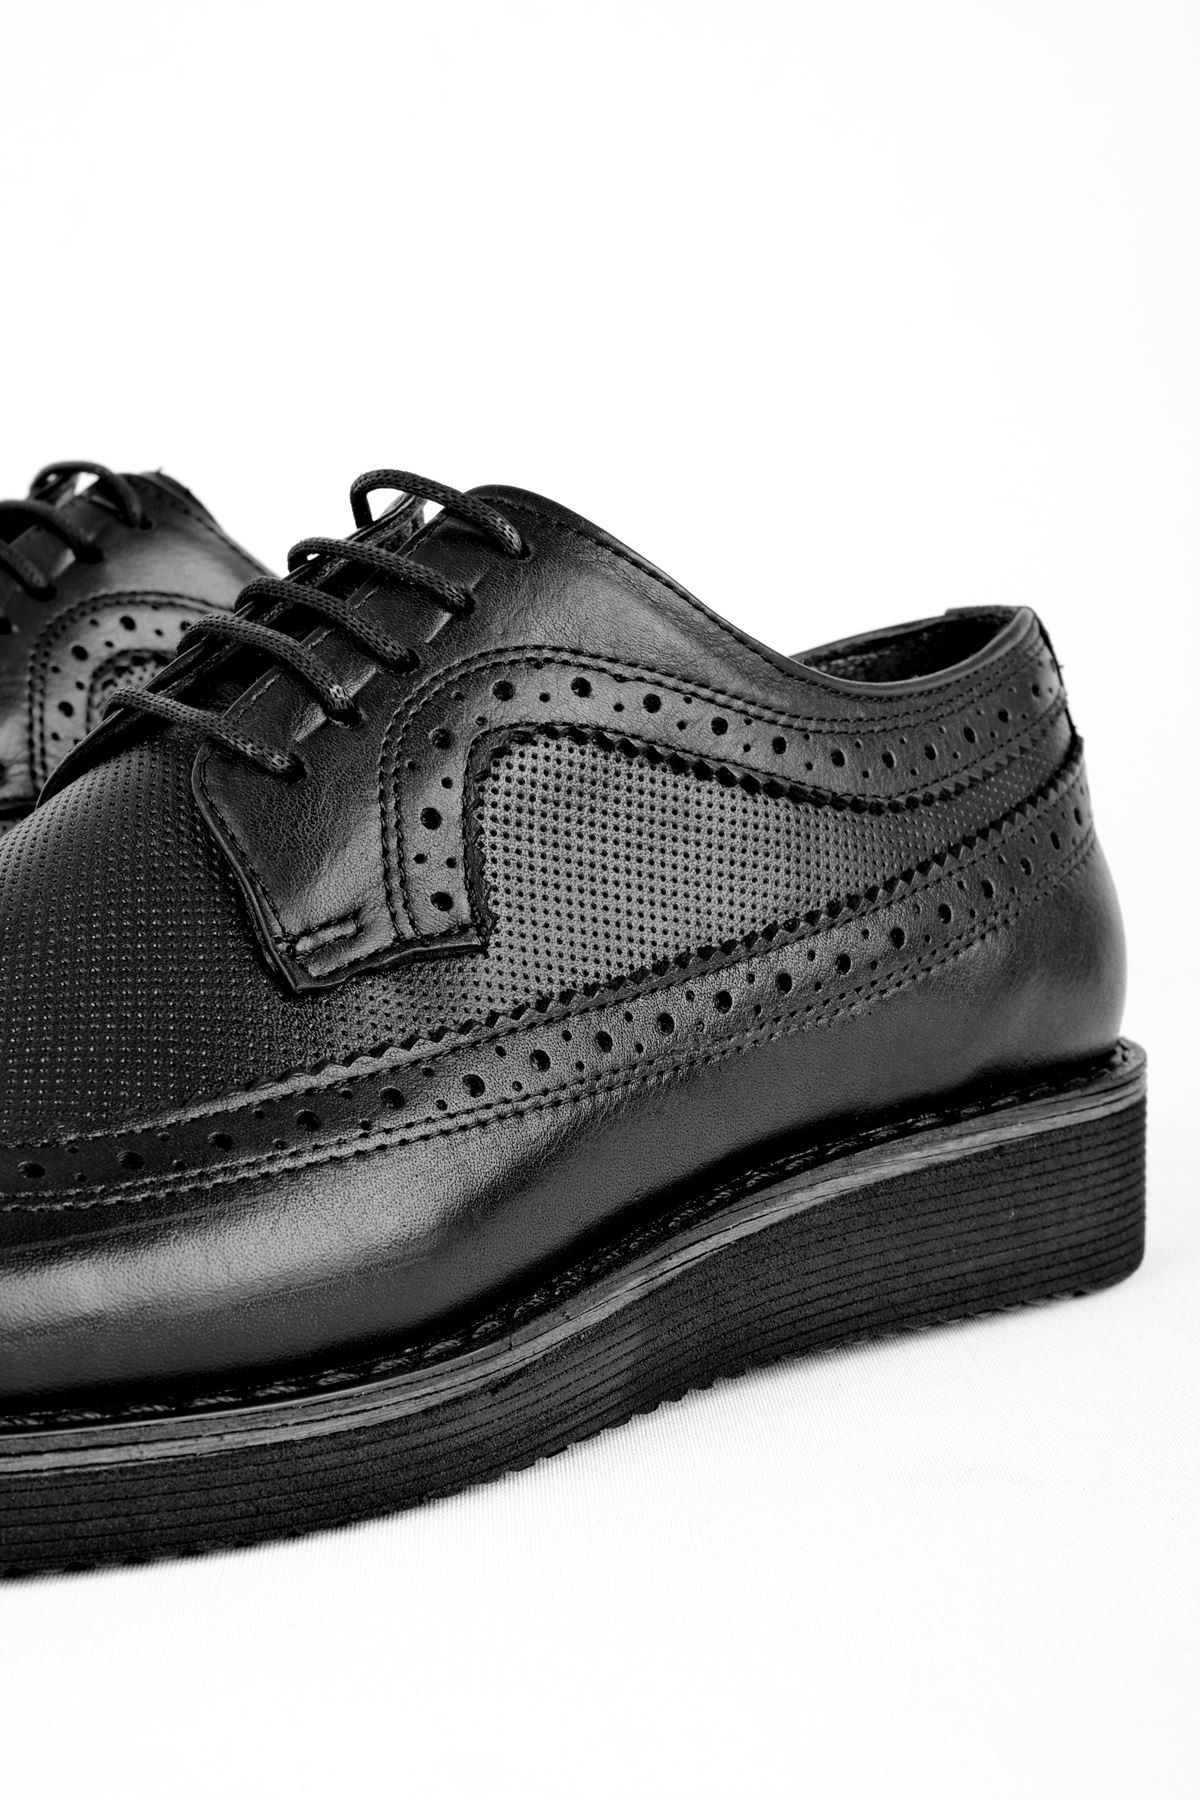 Class Erkek Hakiki Deri Ayakkabı Klasik - Siyah